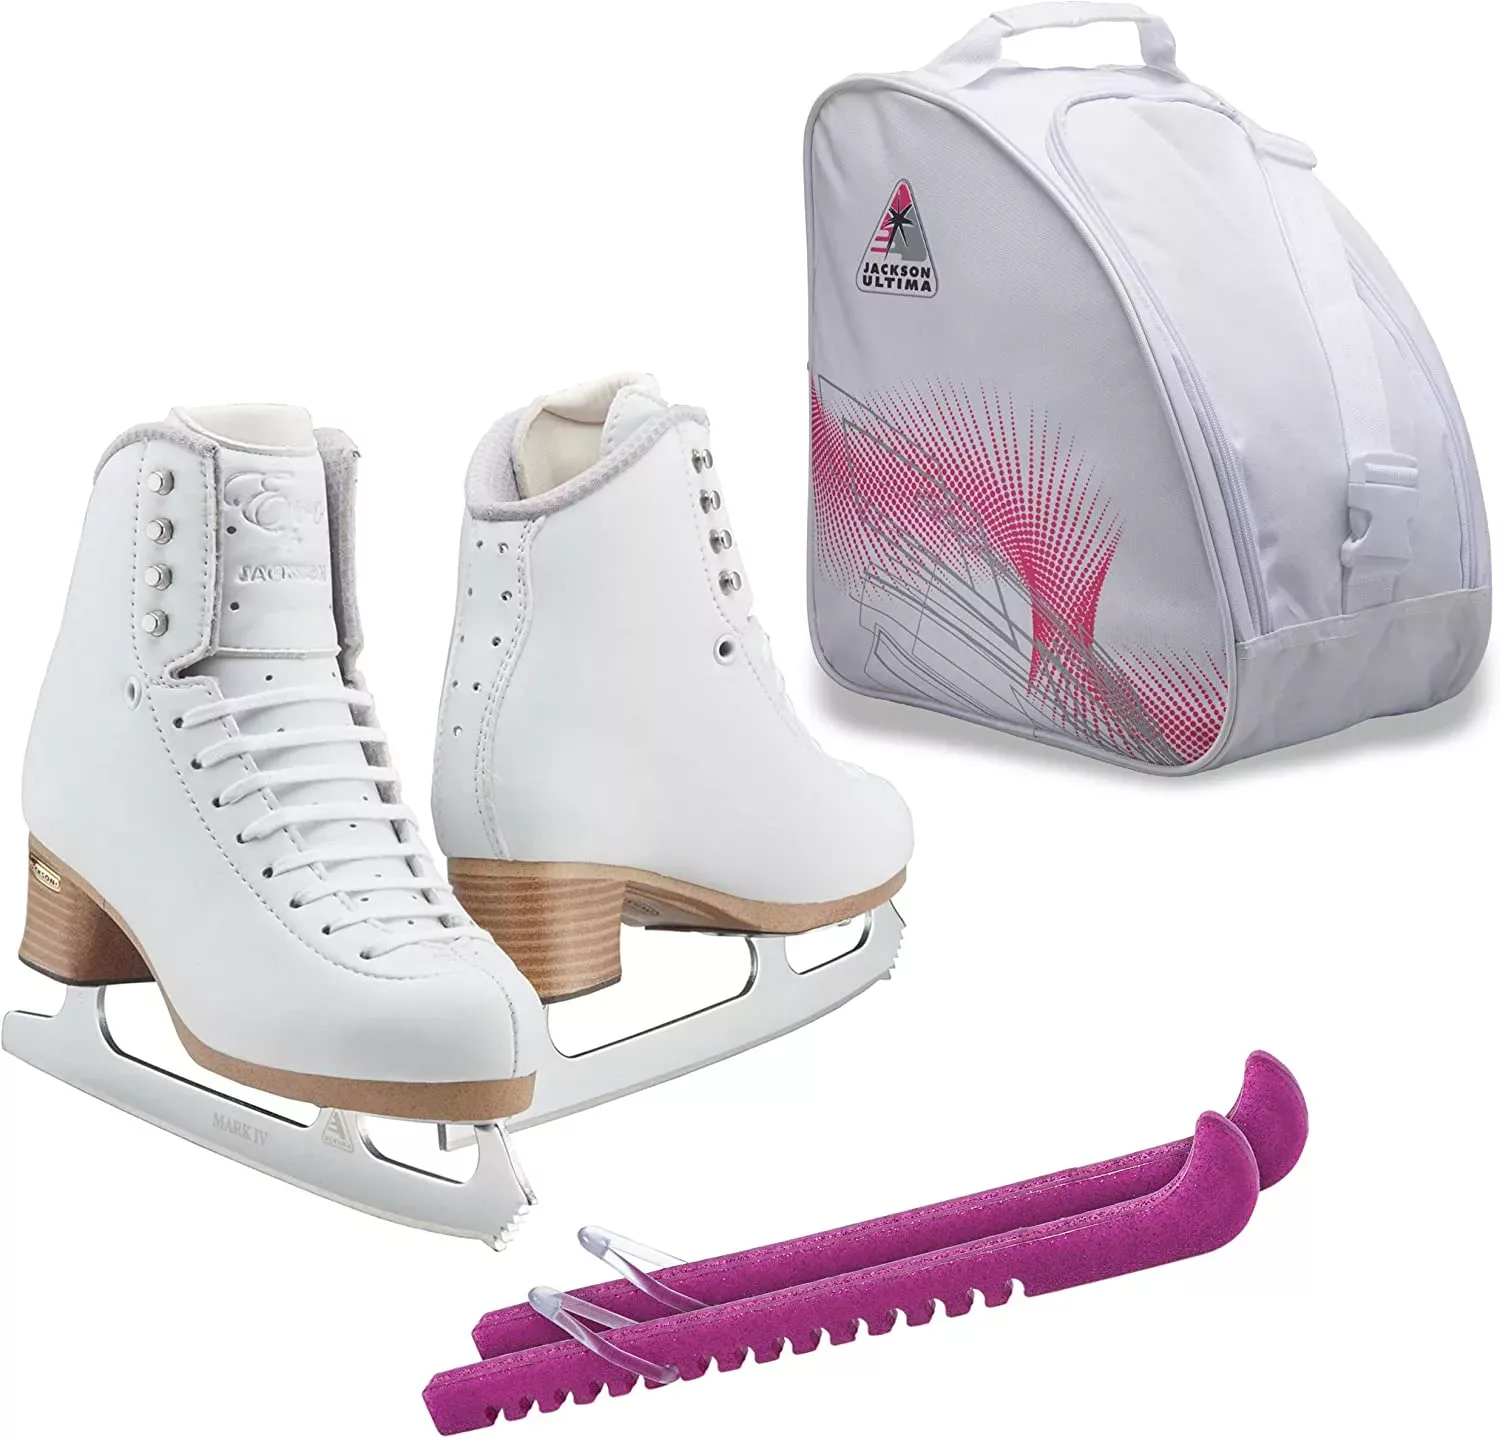 Jackson Ultima SoftSkate Patines de hielo para mujer / Paquete con bolsa  Jackson, Guardas para patines Guardog / Púrpura - SKATE GURU INC